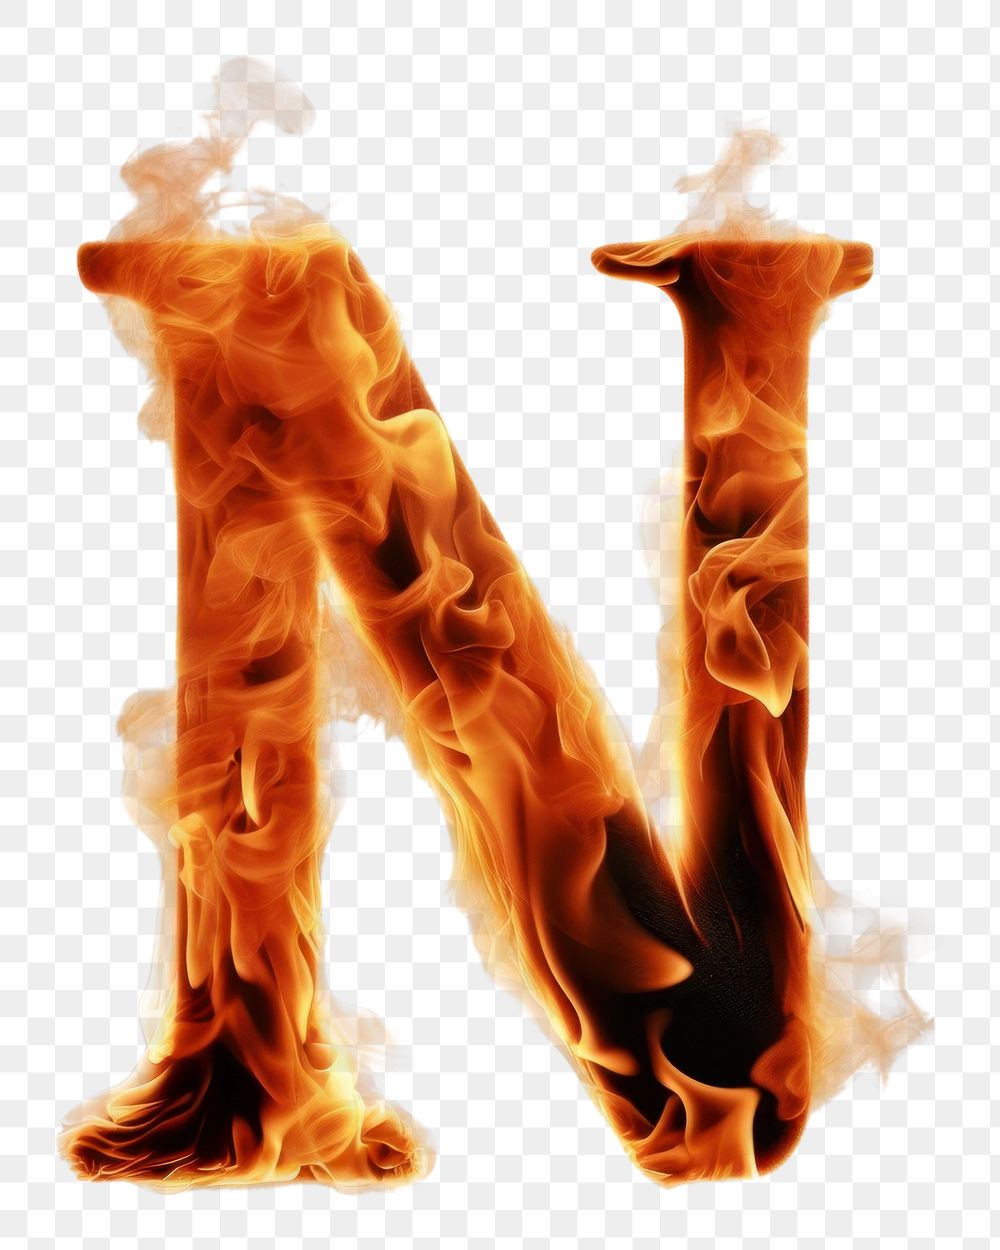 Burning letter N bonfire burning motion.